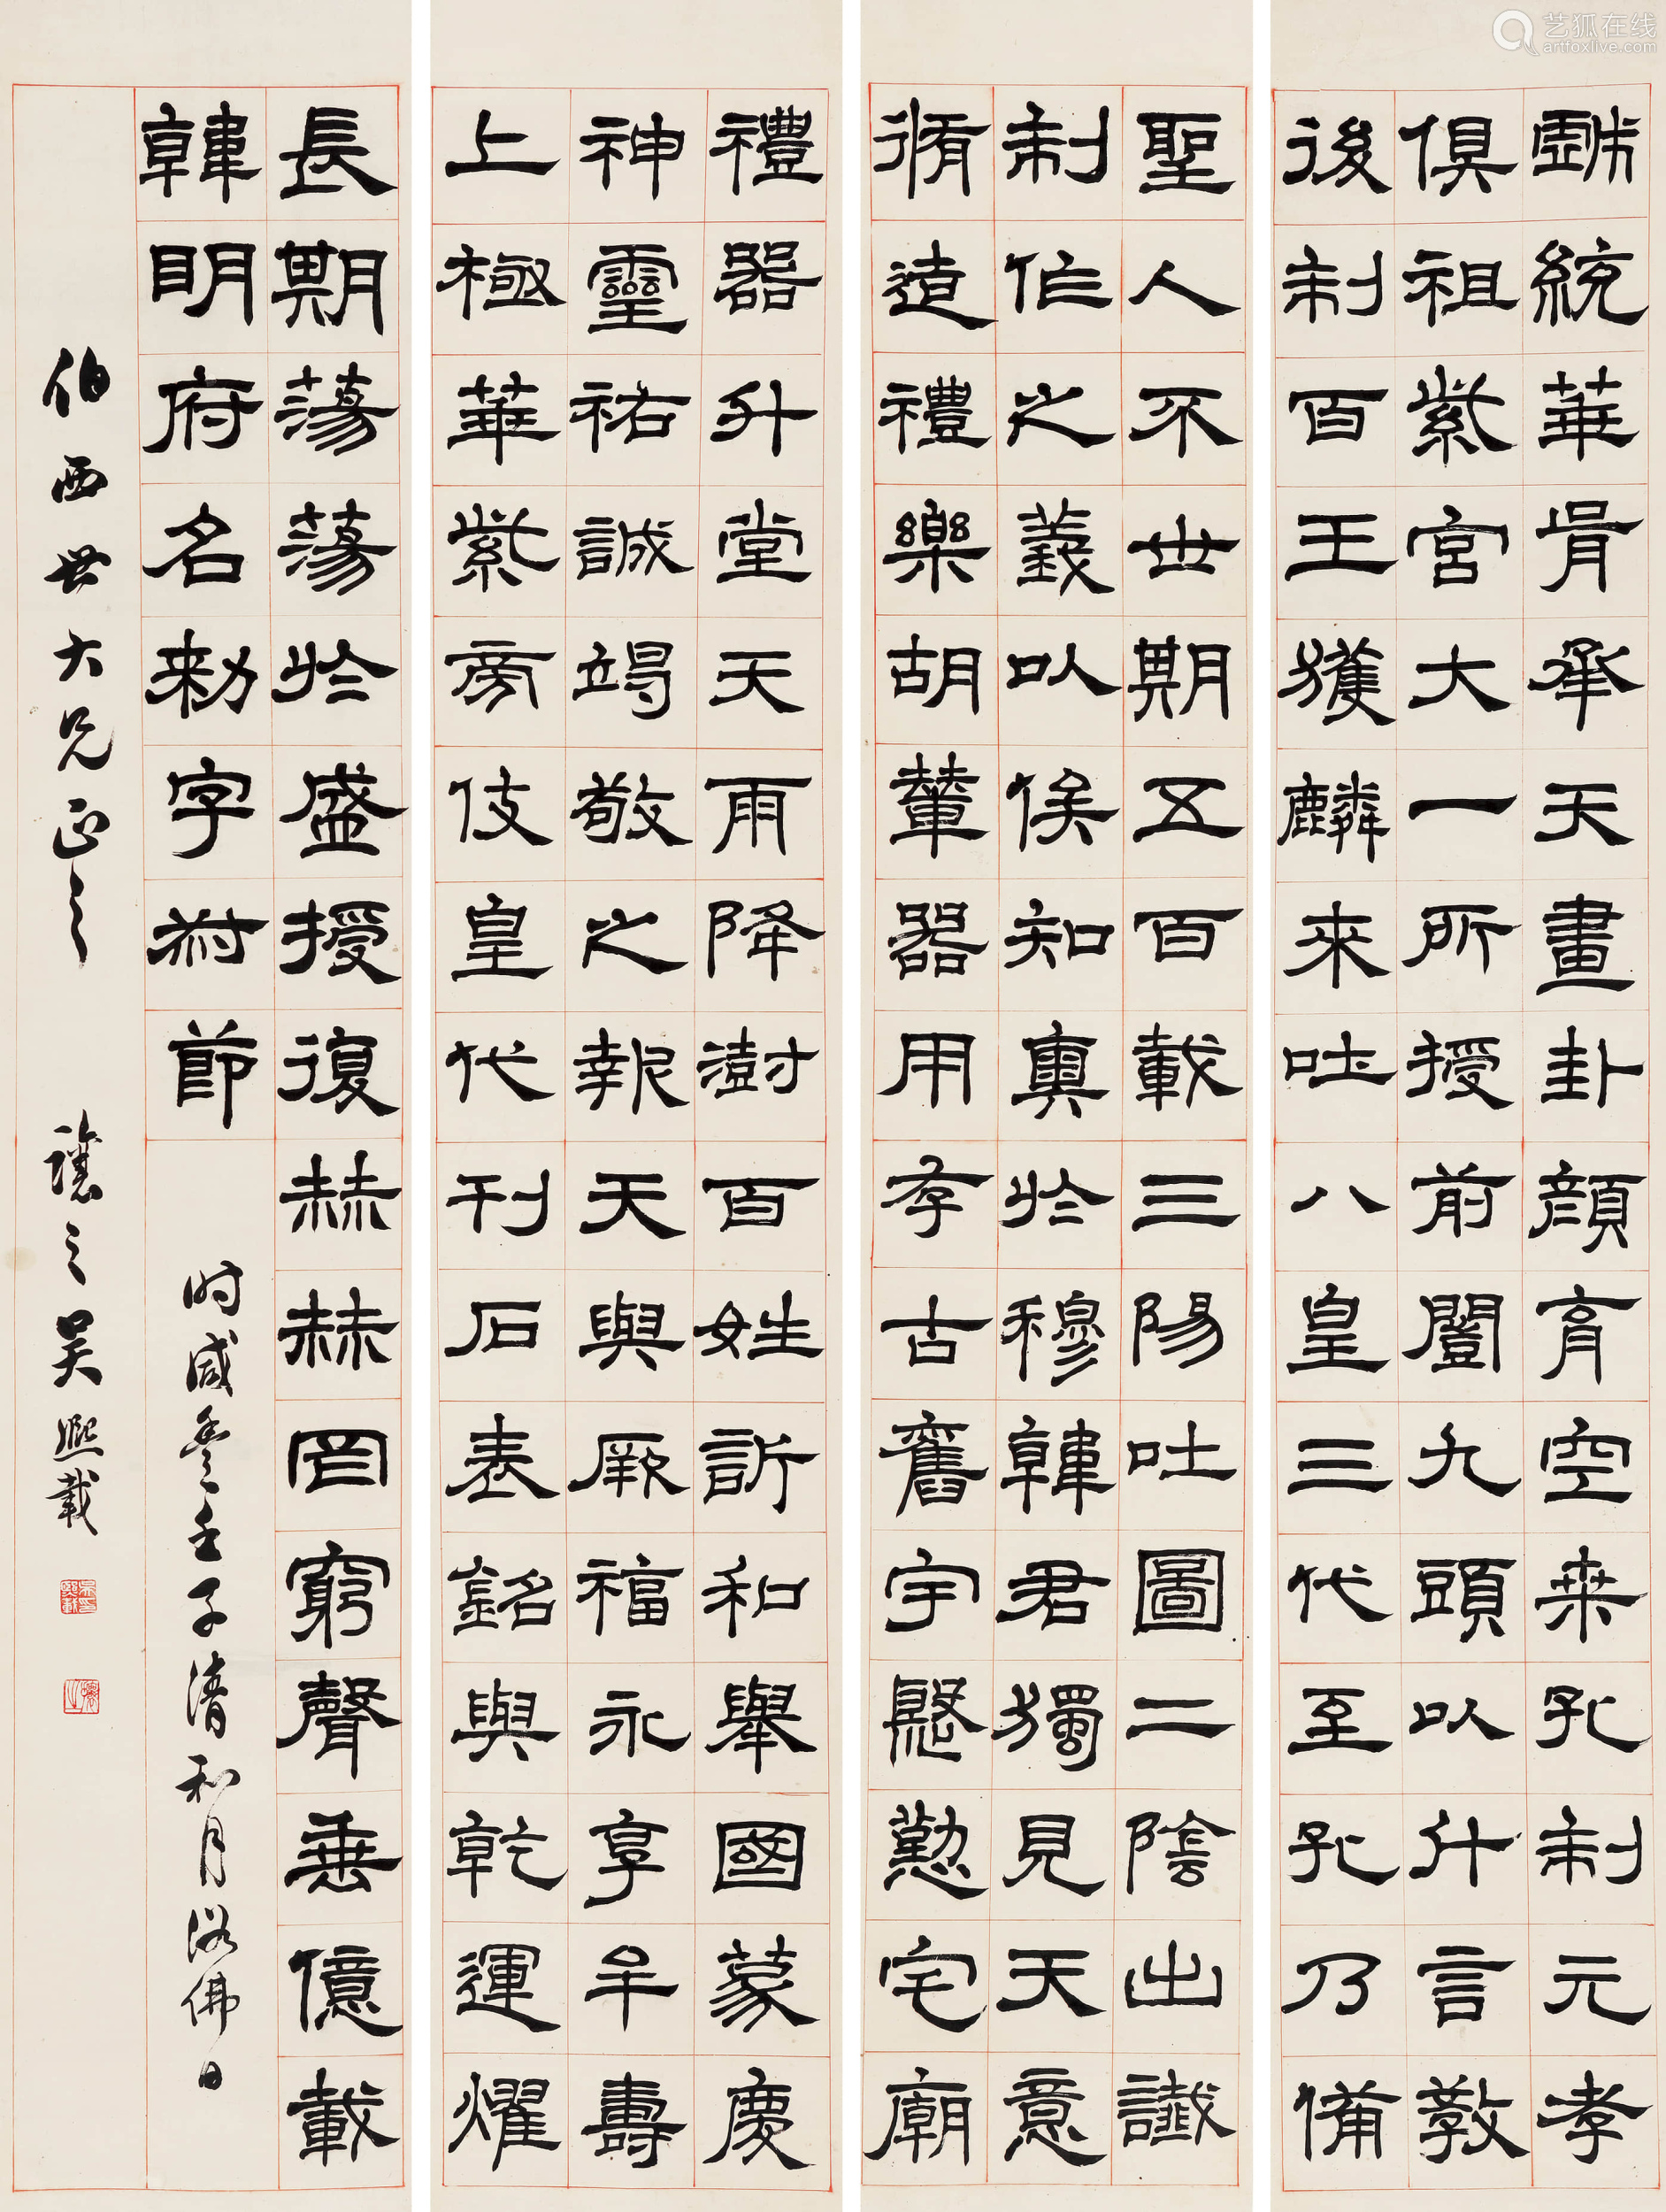 17991870吴让之隶书礼器碑四屏书法立轴水墨纸本